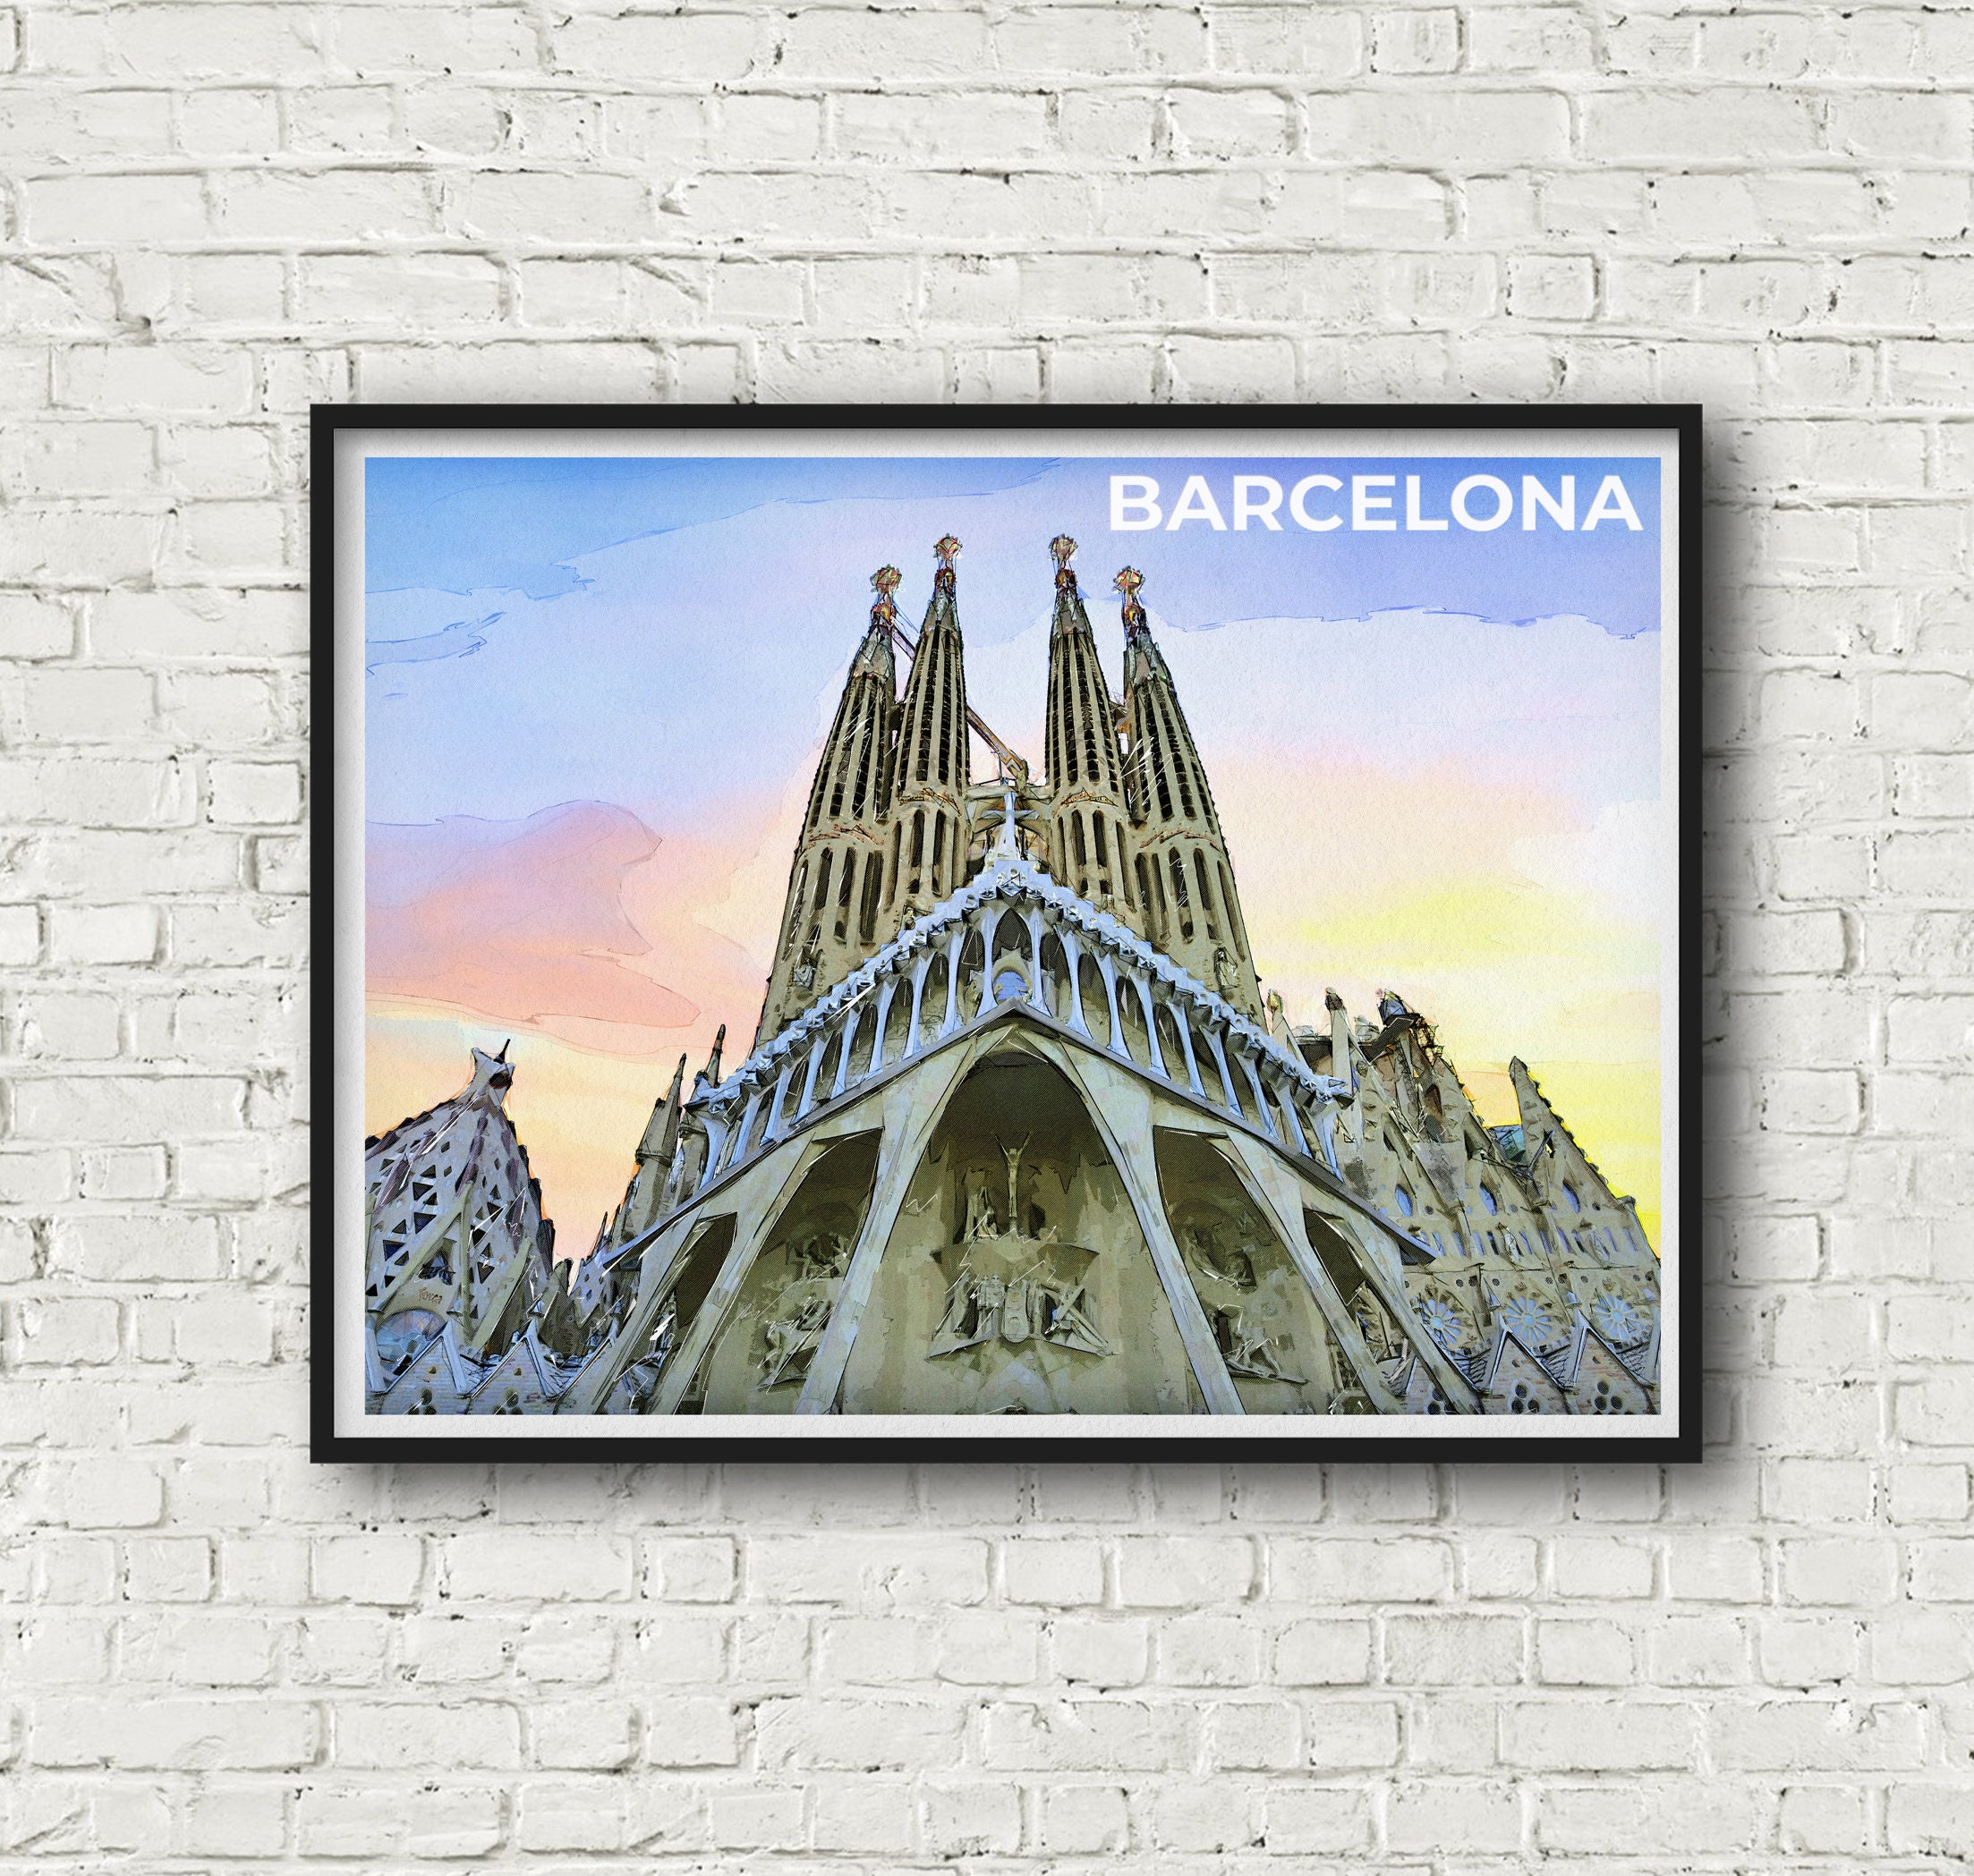 Sagrada Familia in Barcelona Spain artwork. | Etsy